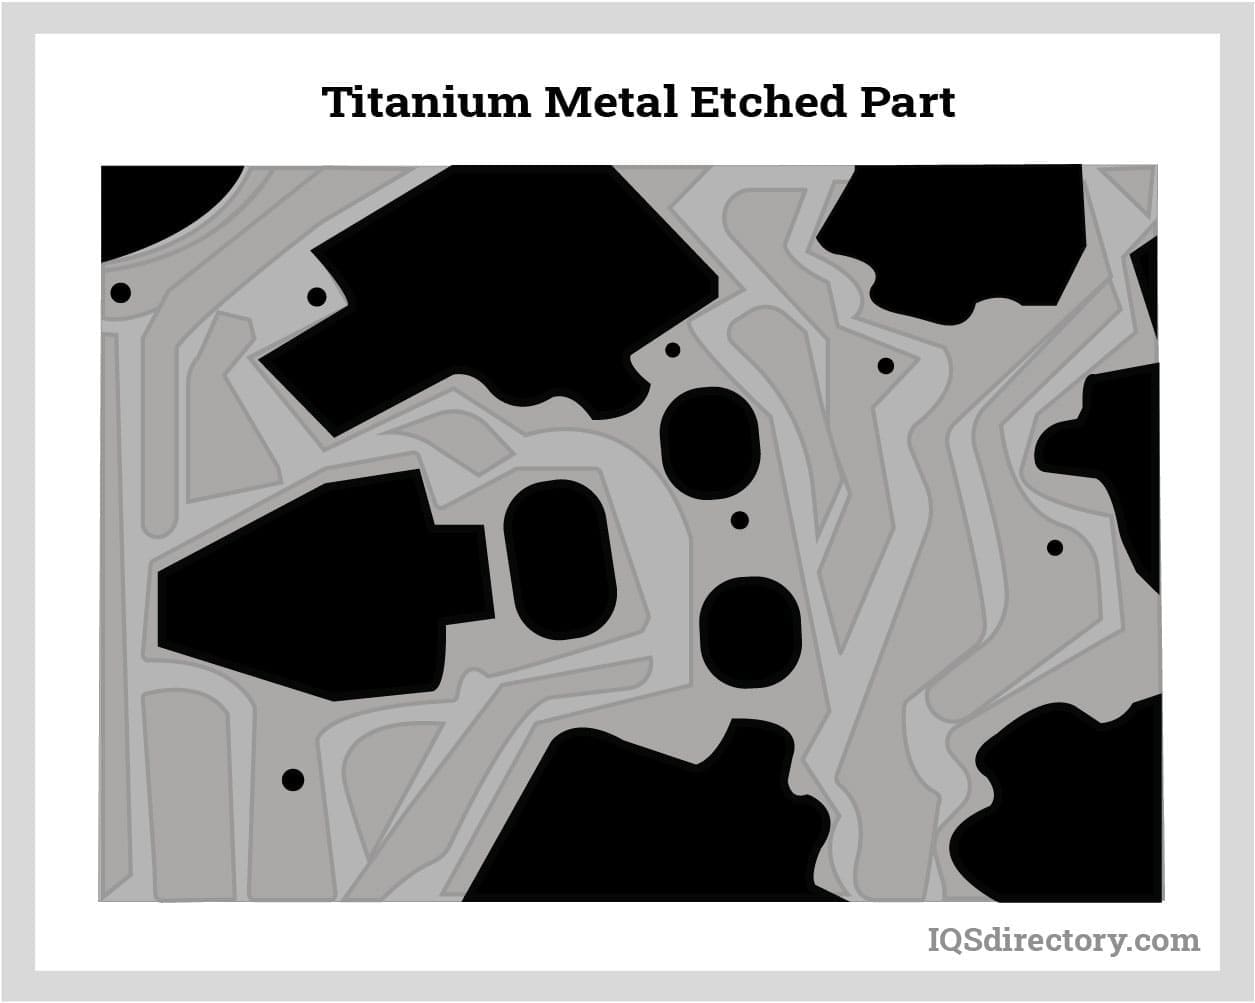 Titanium Etched Part